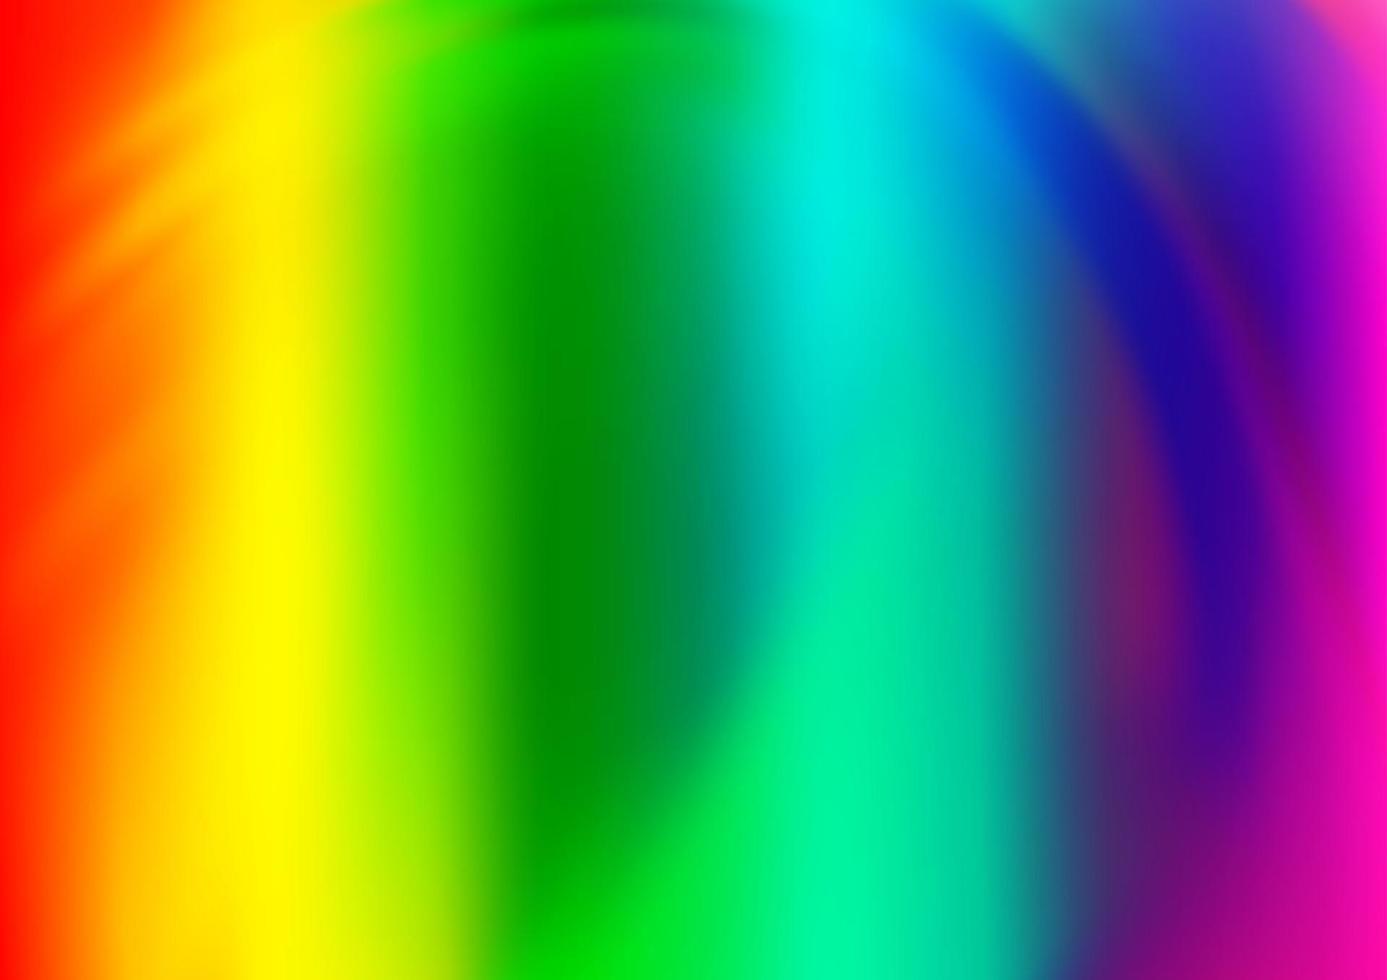 ljus multicolor, regnbåge vektor abstrakt bakgrund.